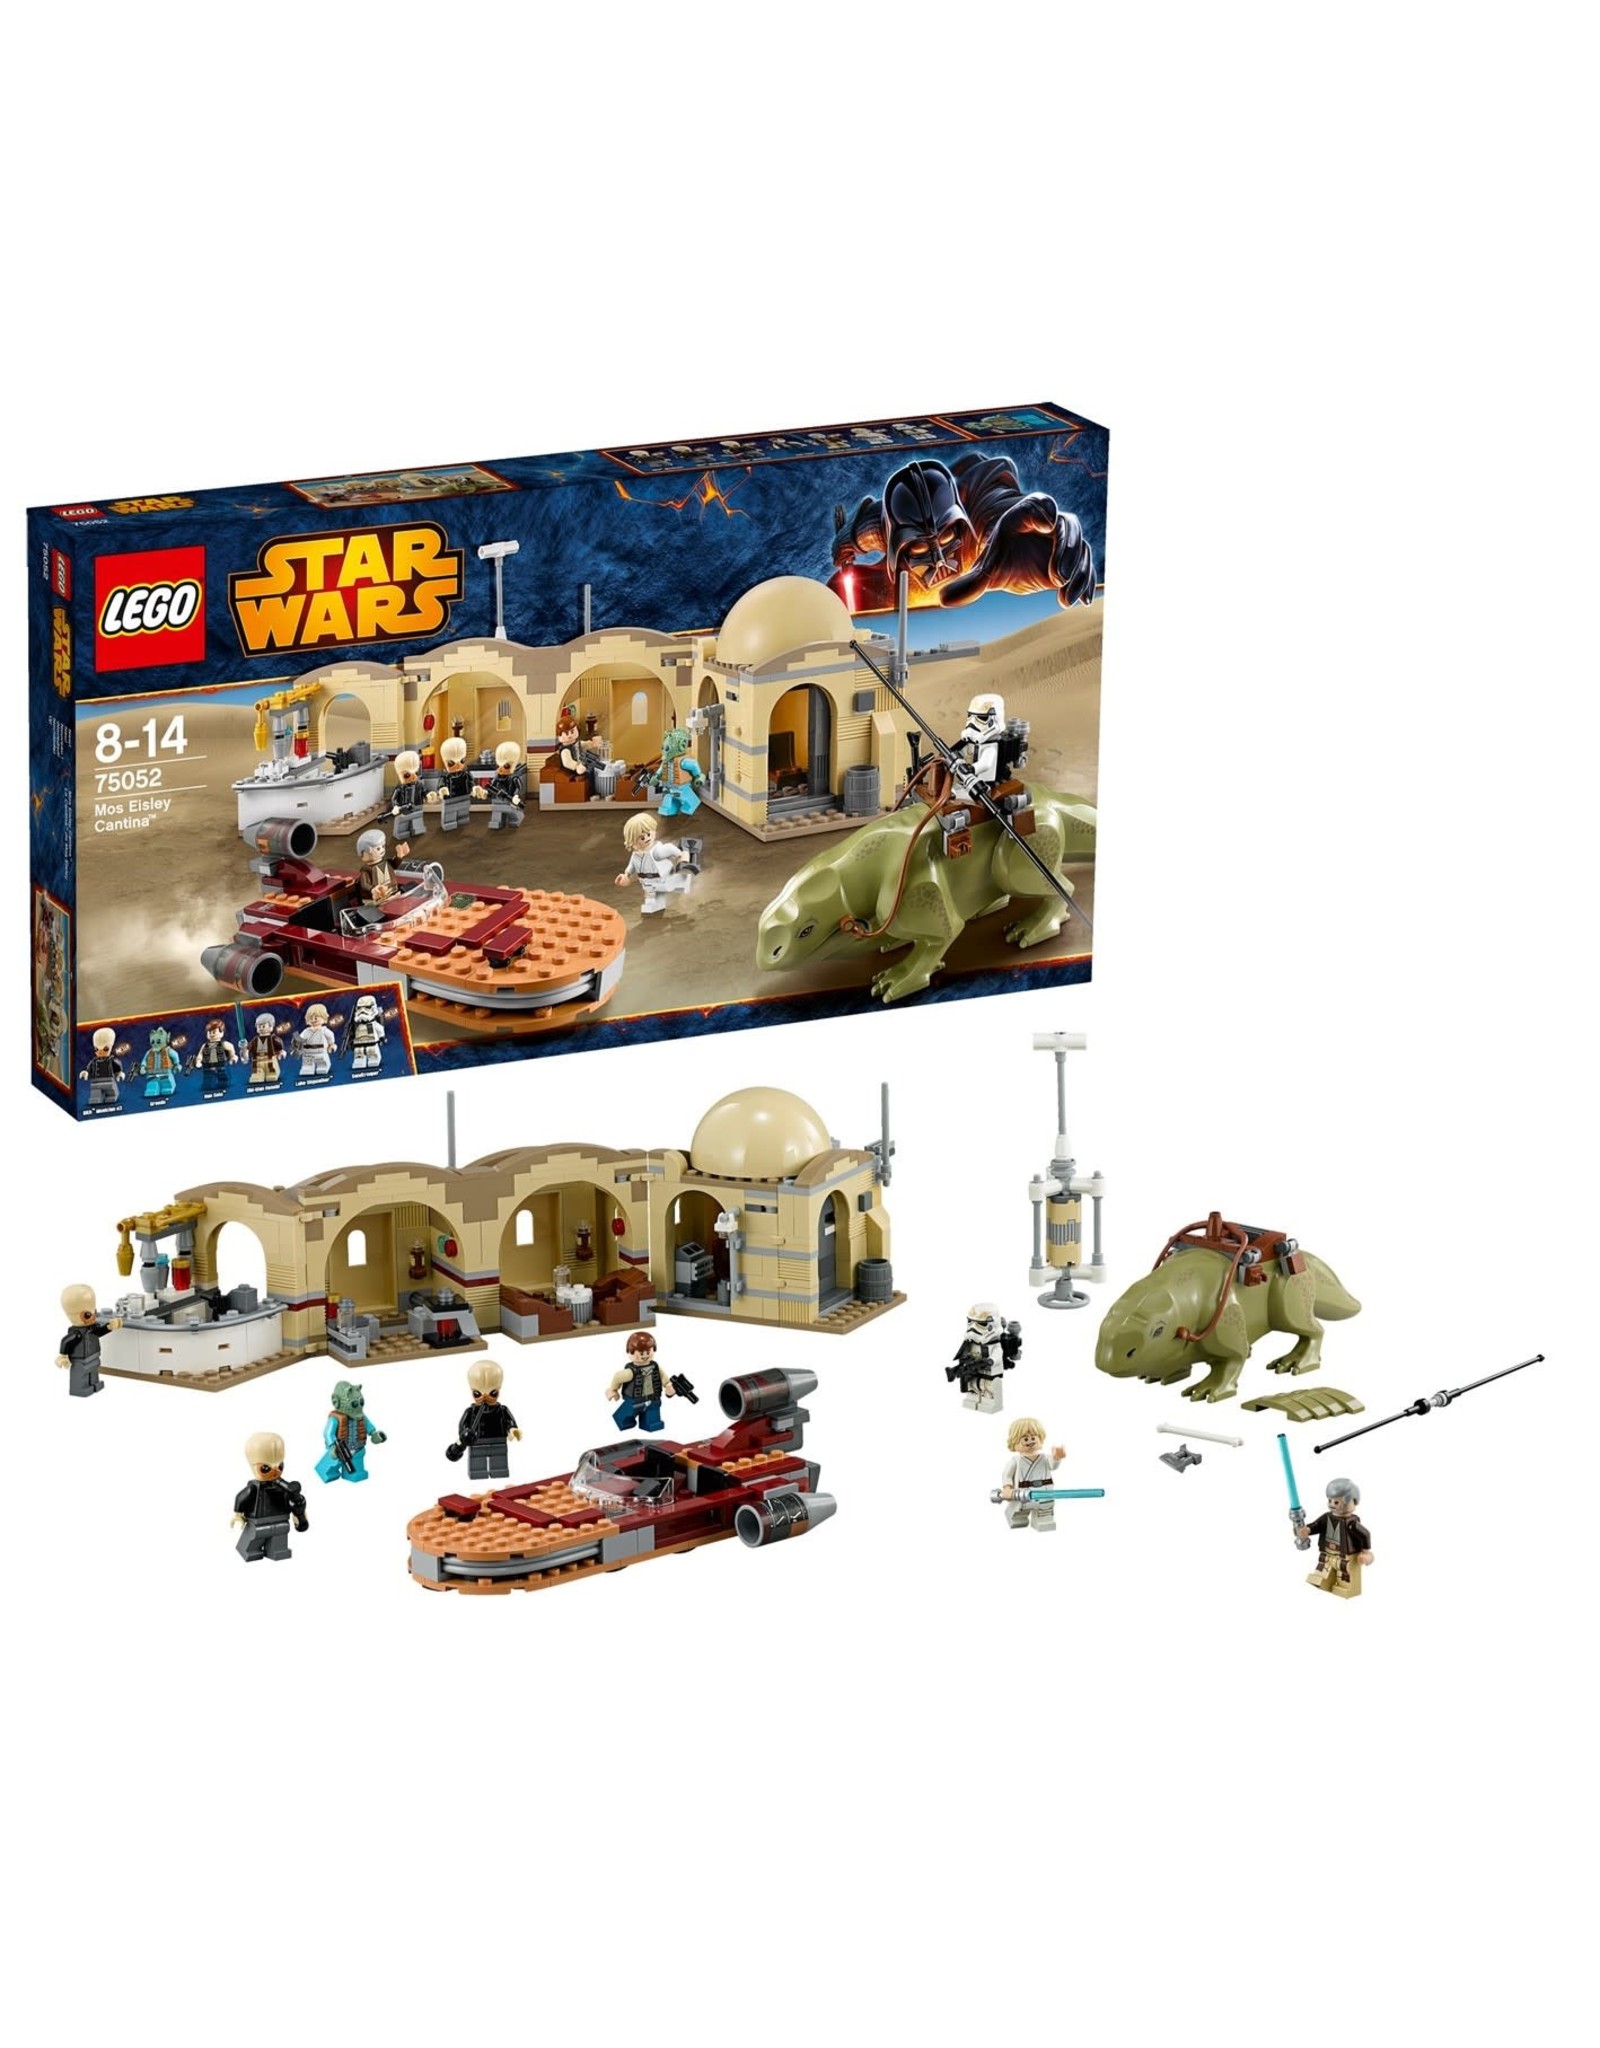 LEGO Lego Star Wars 75052 Mos Eisley Cantina